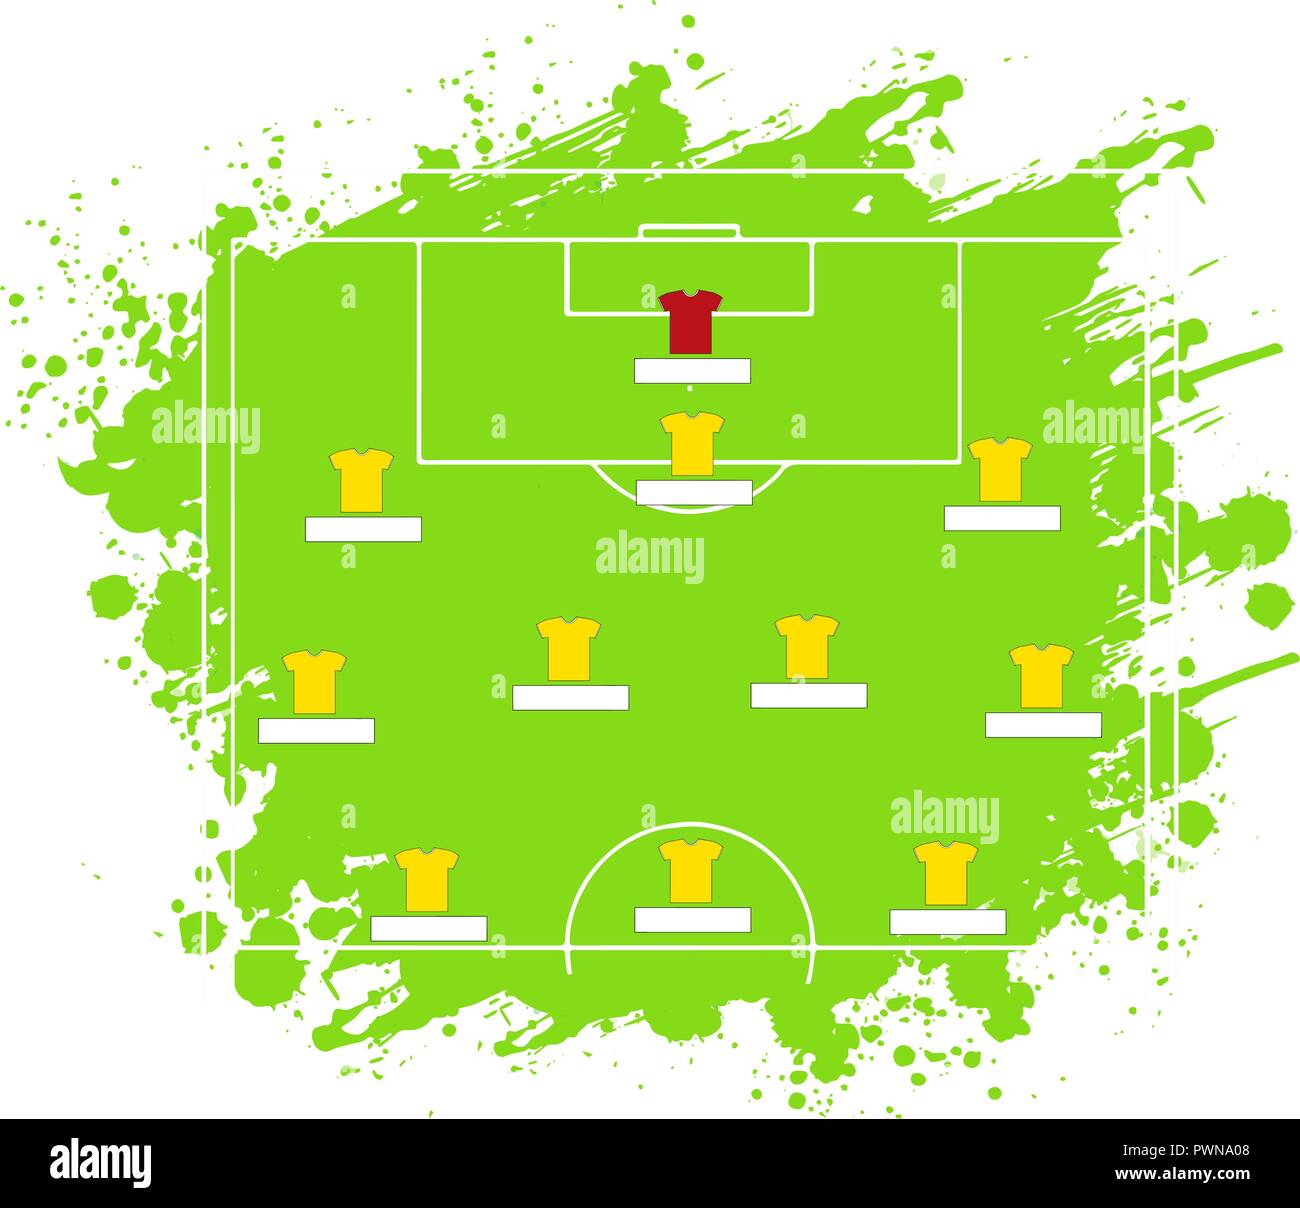 Fußball Taktik Tabelle. Vector Illustration. Die Taktischen Schema von fünf Drei Zwei Stock Vektor